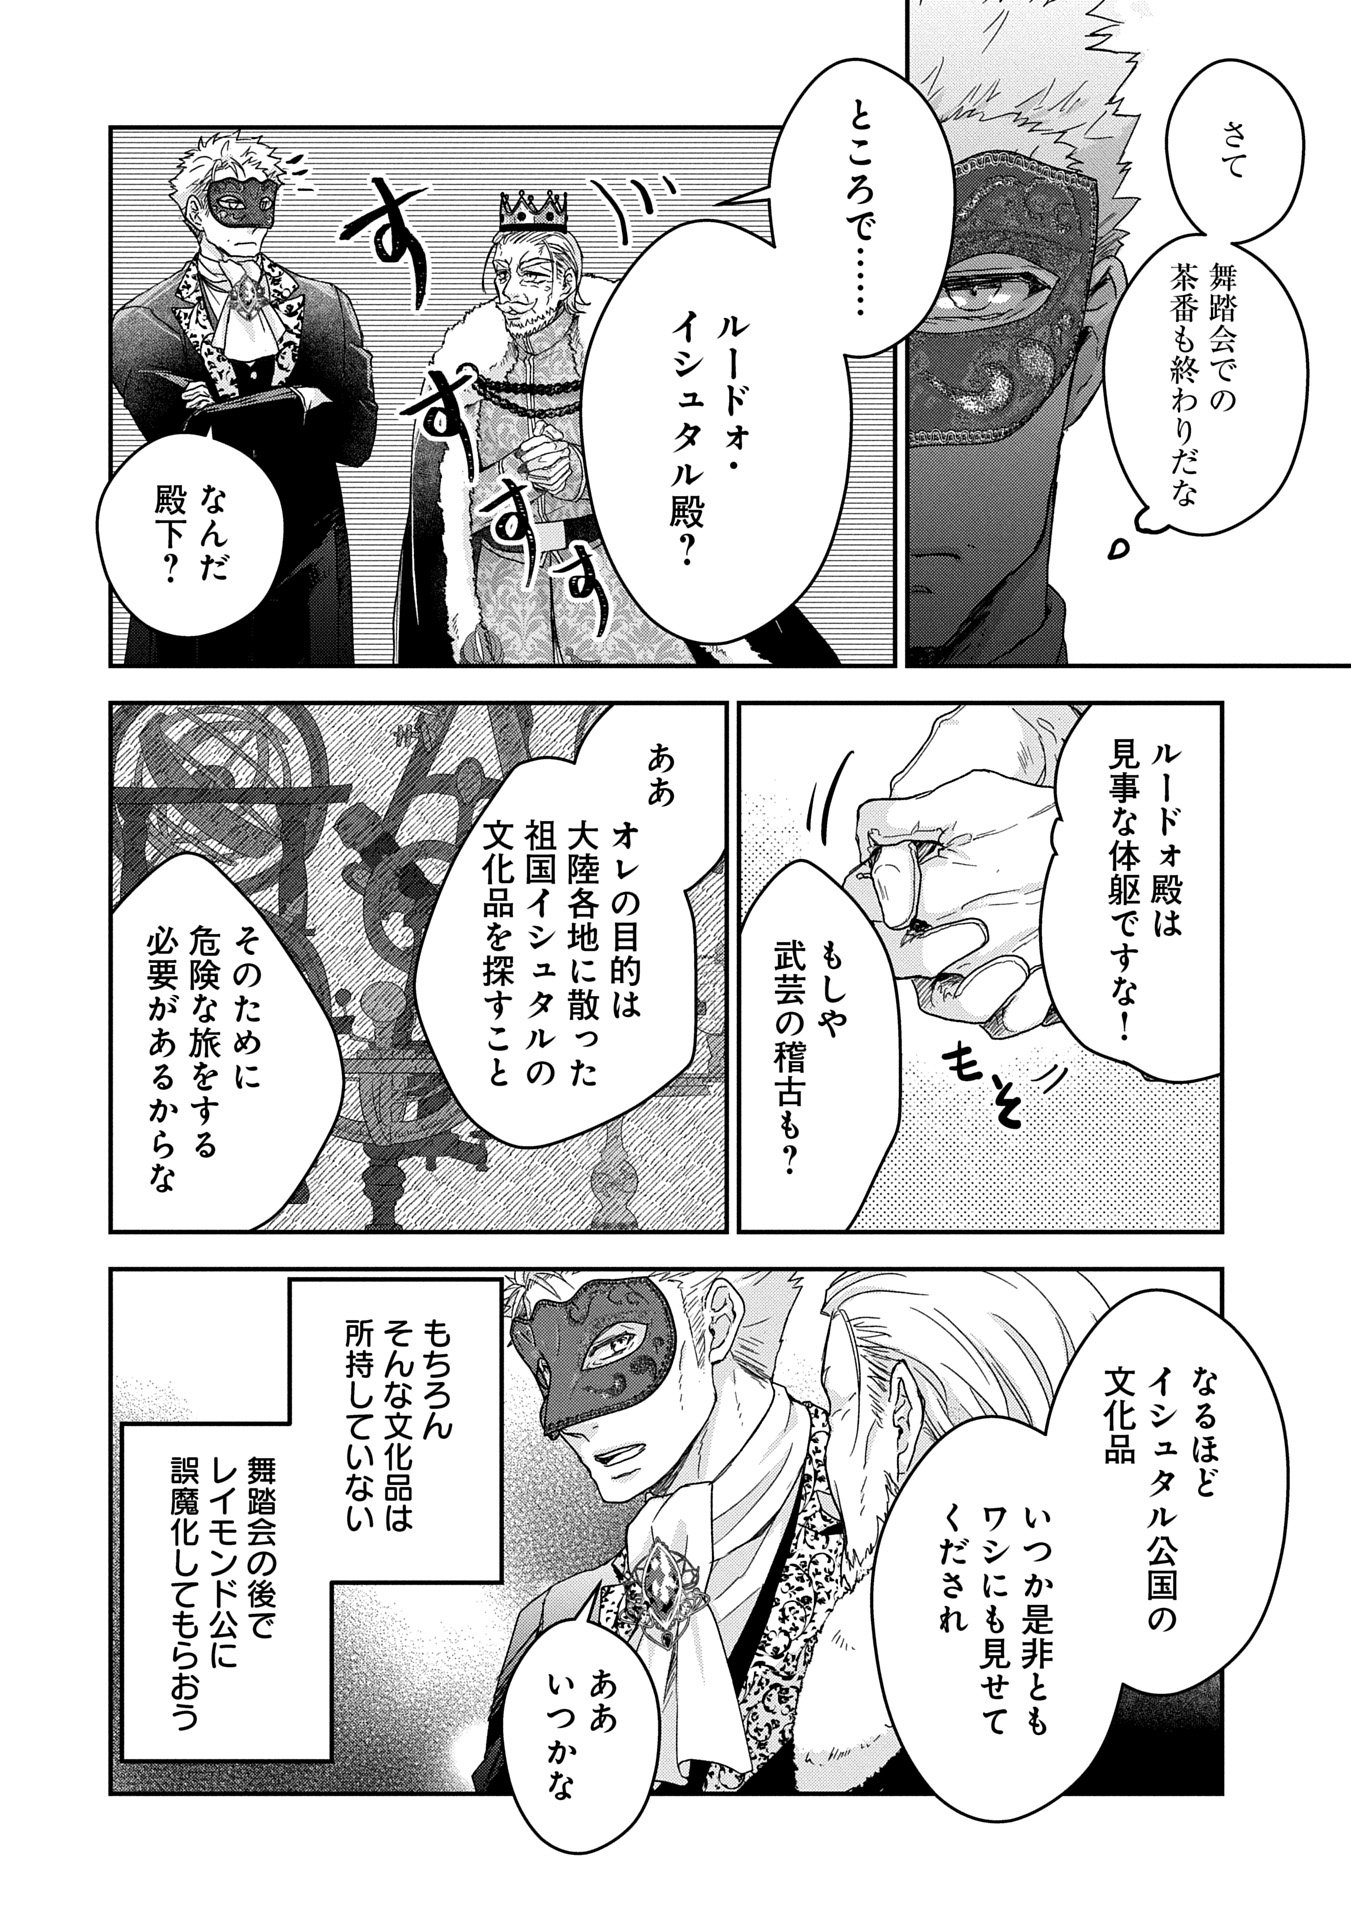 Senki to Yobareta Otoko, Puke ni Ansatsu Saretar Musume wo Hiroi, Issho ni Slow Life wo Hajimeru - Chapter 28.2 - Page 12